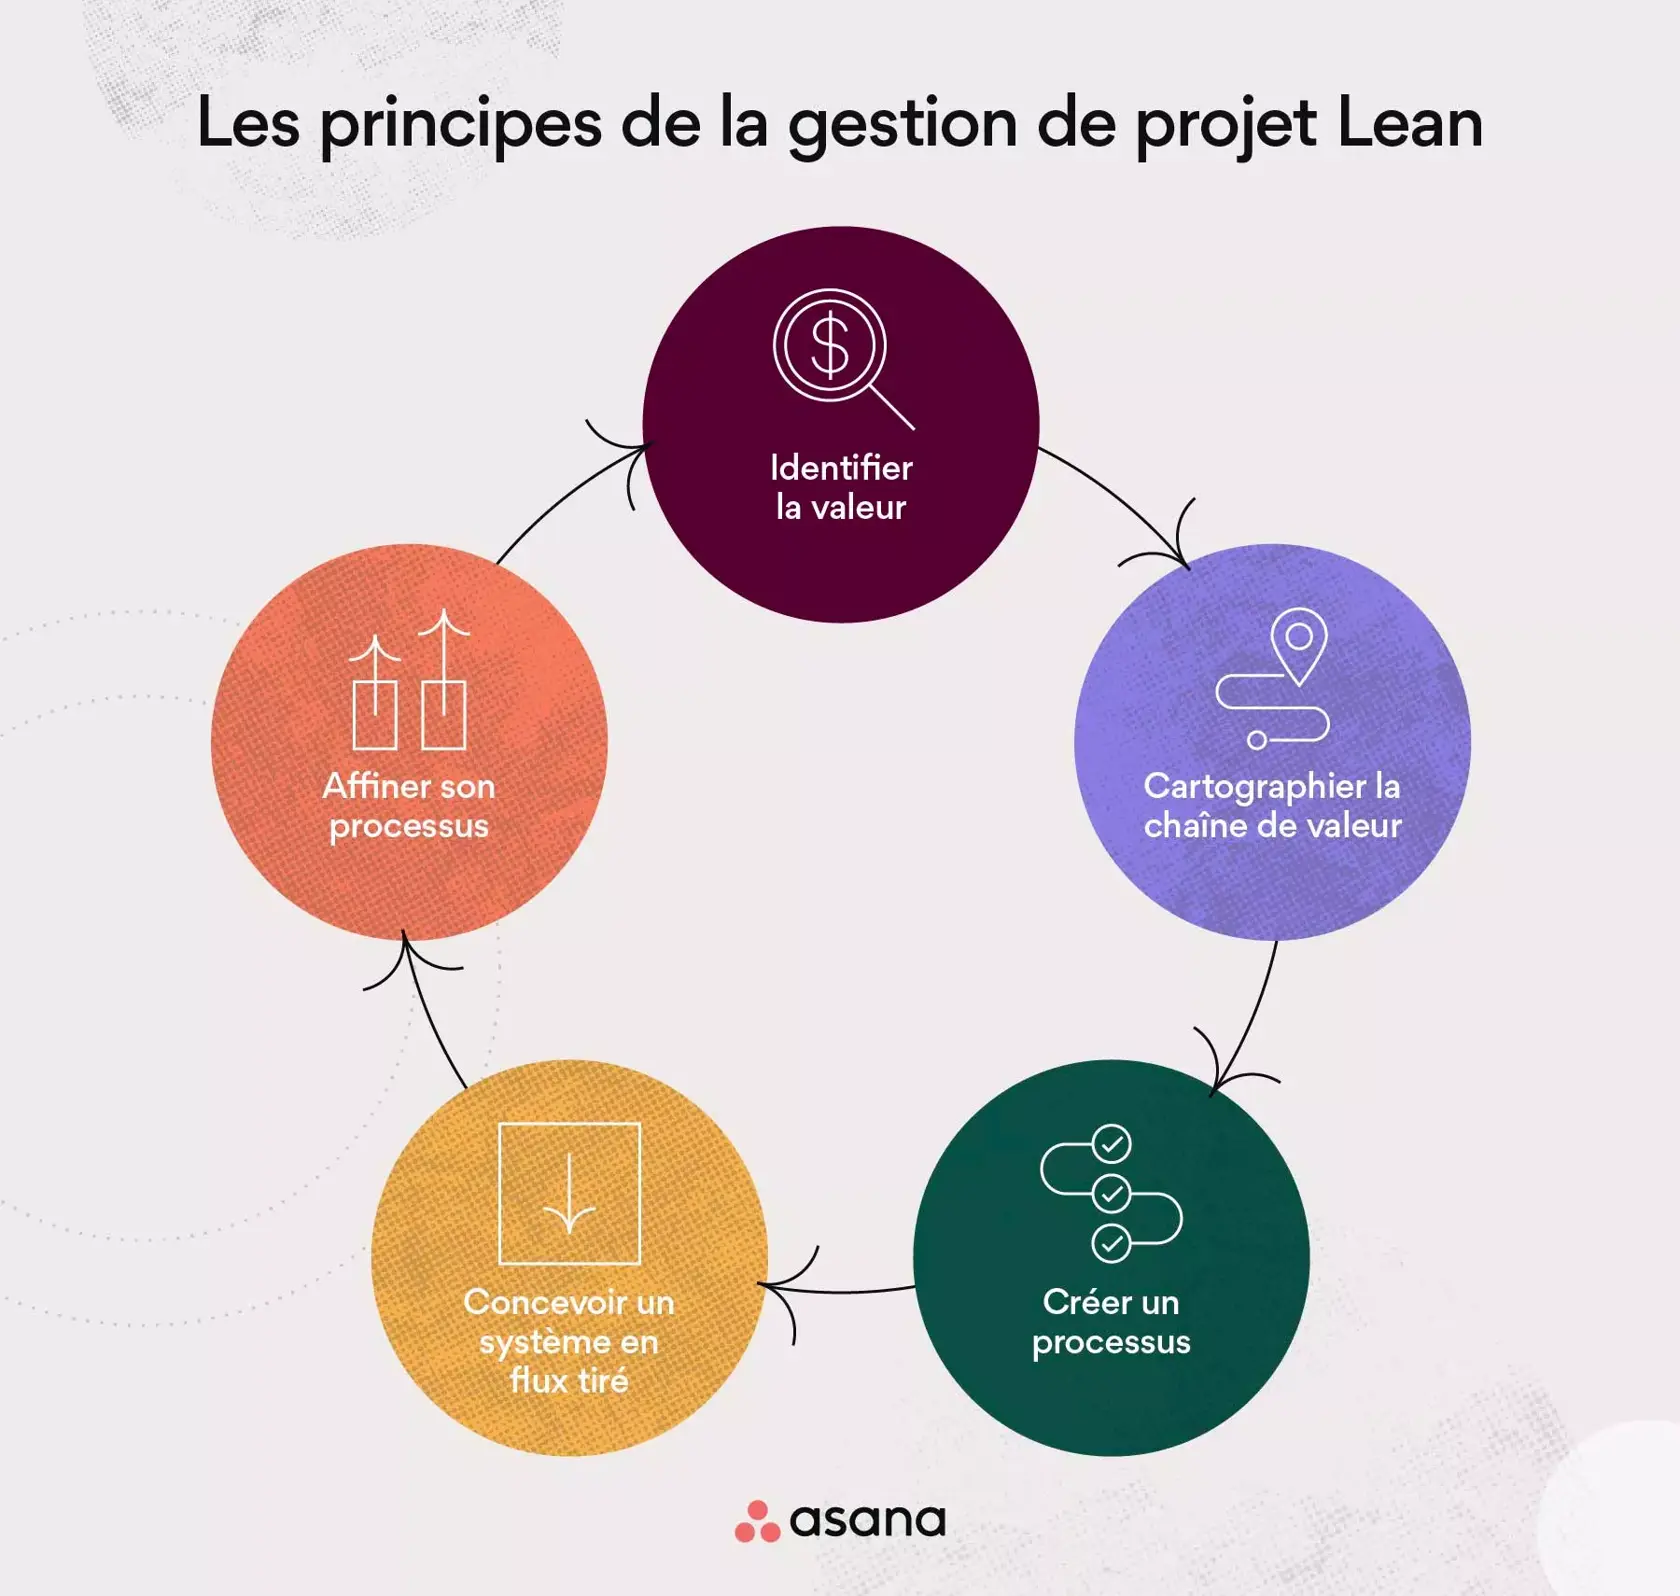 Les principes de la gestion de projet Lean